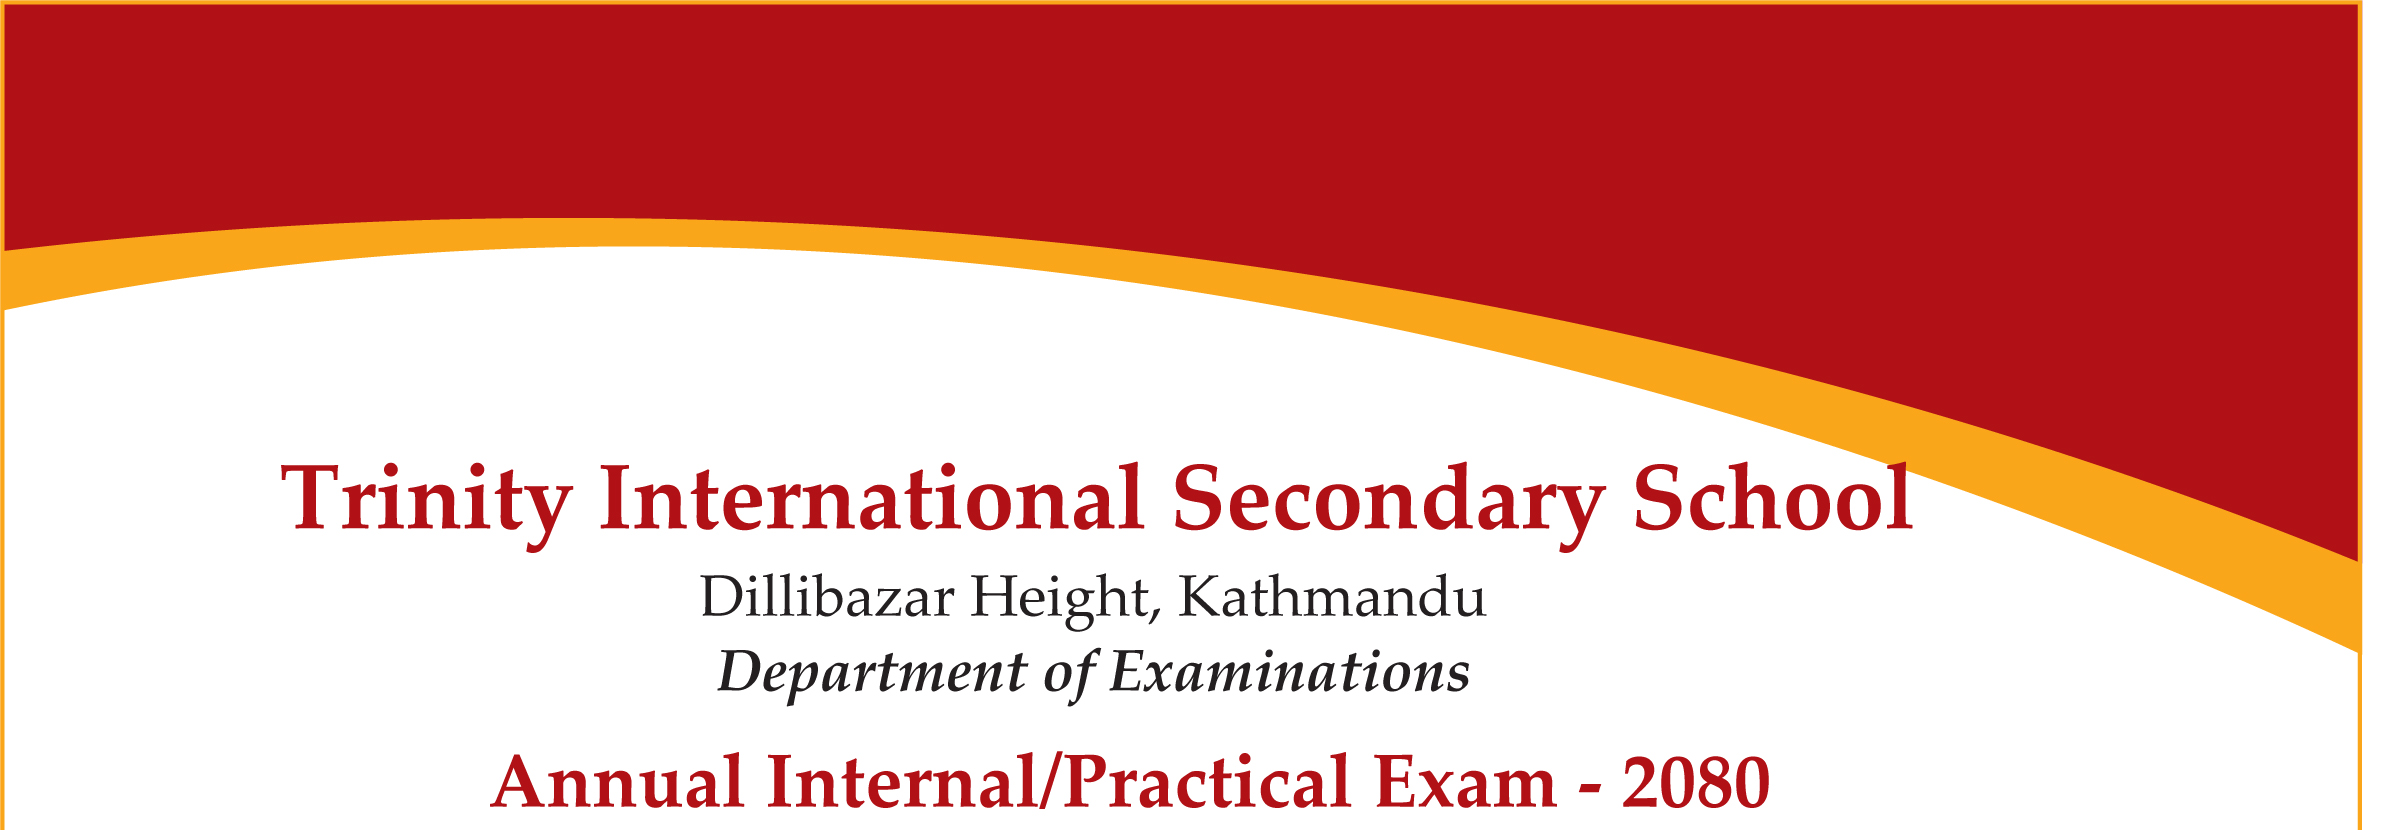 Annual Internal Practical Exam - 2080